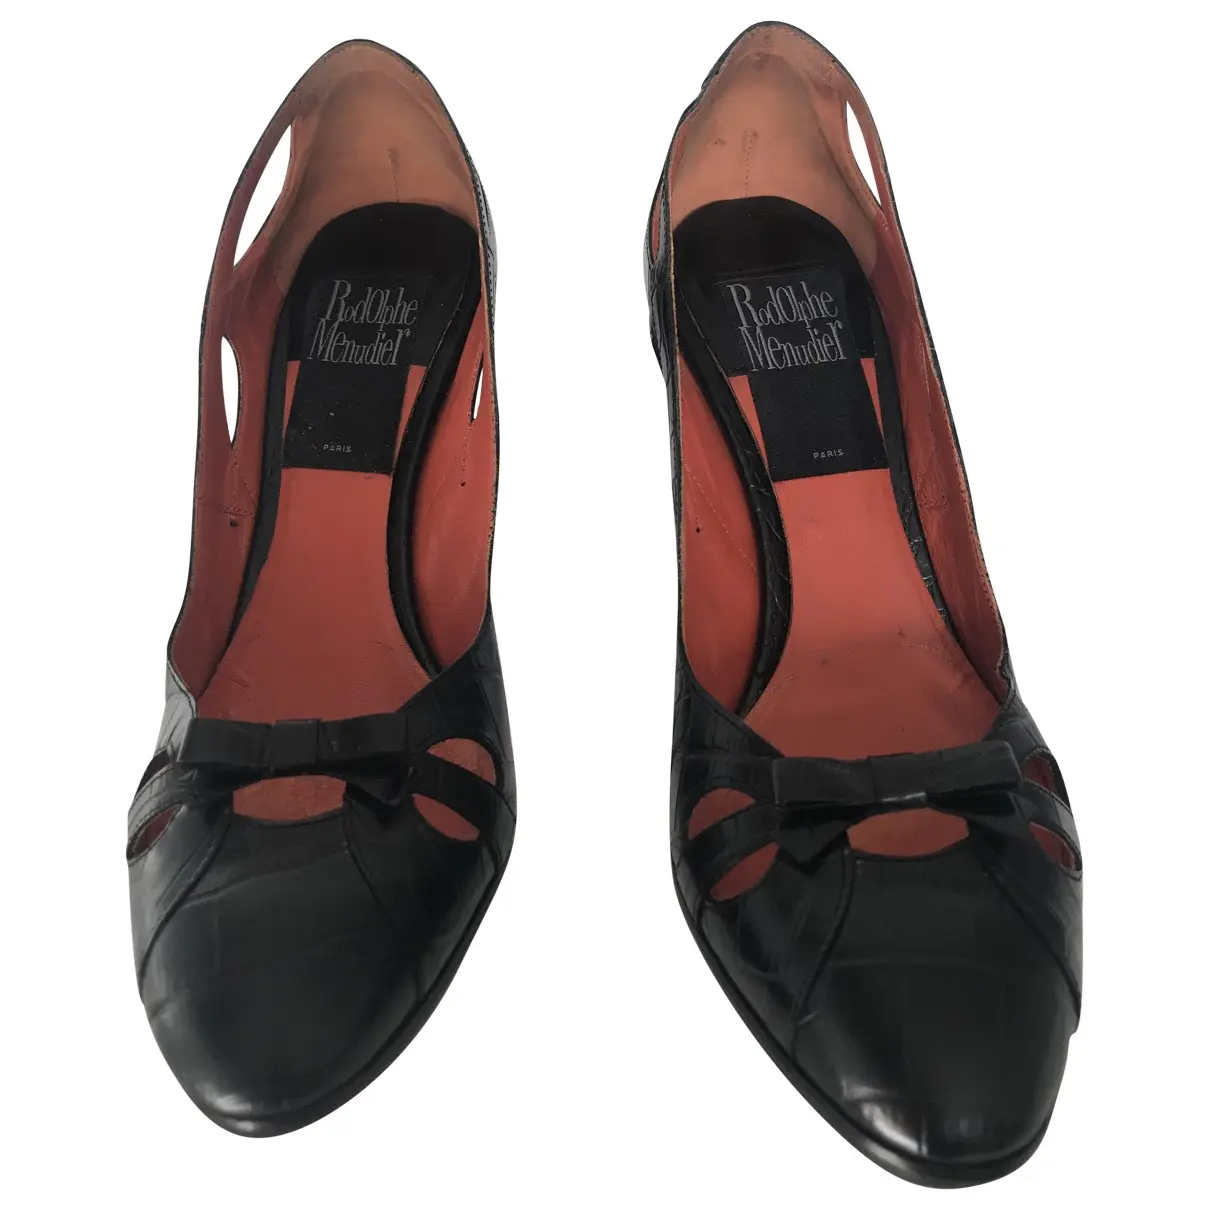 Leather heels Rodolphe Menudier